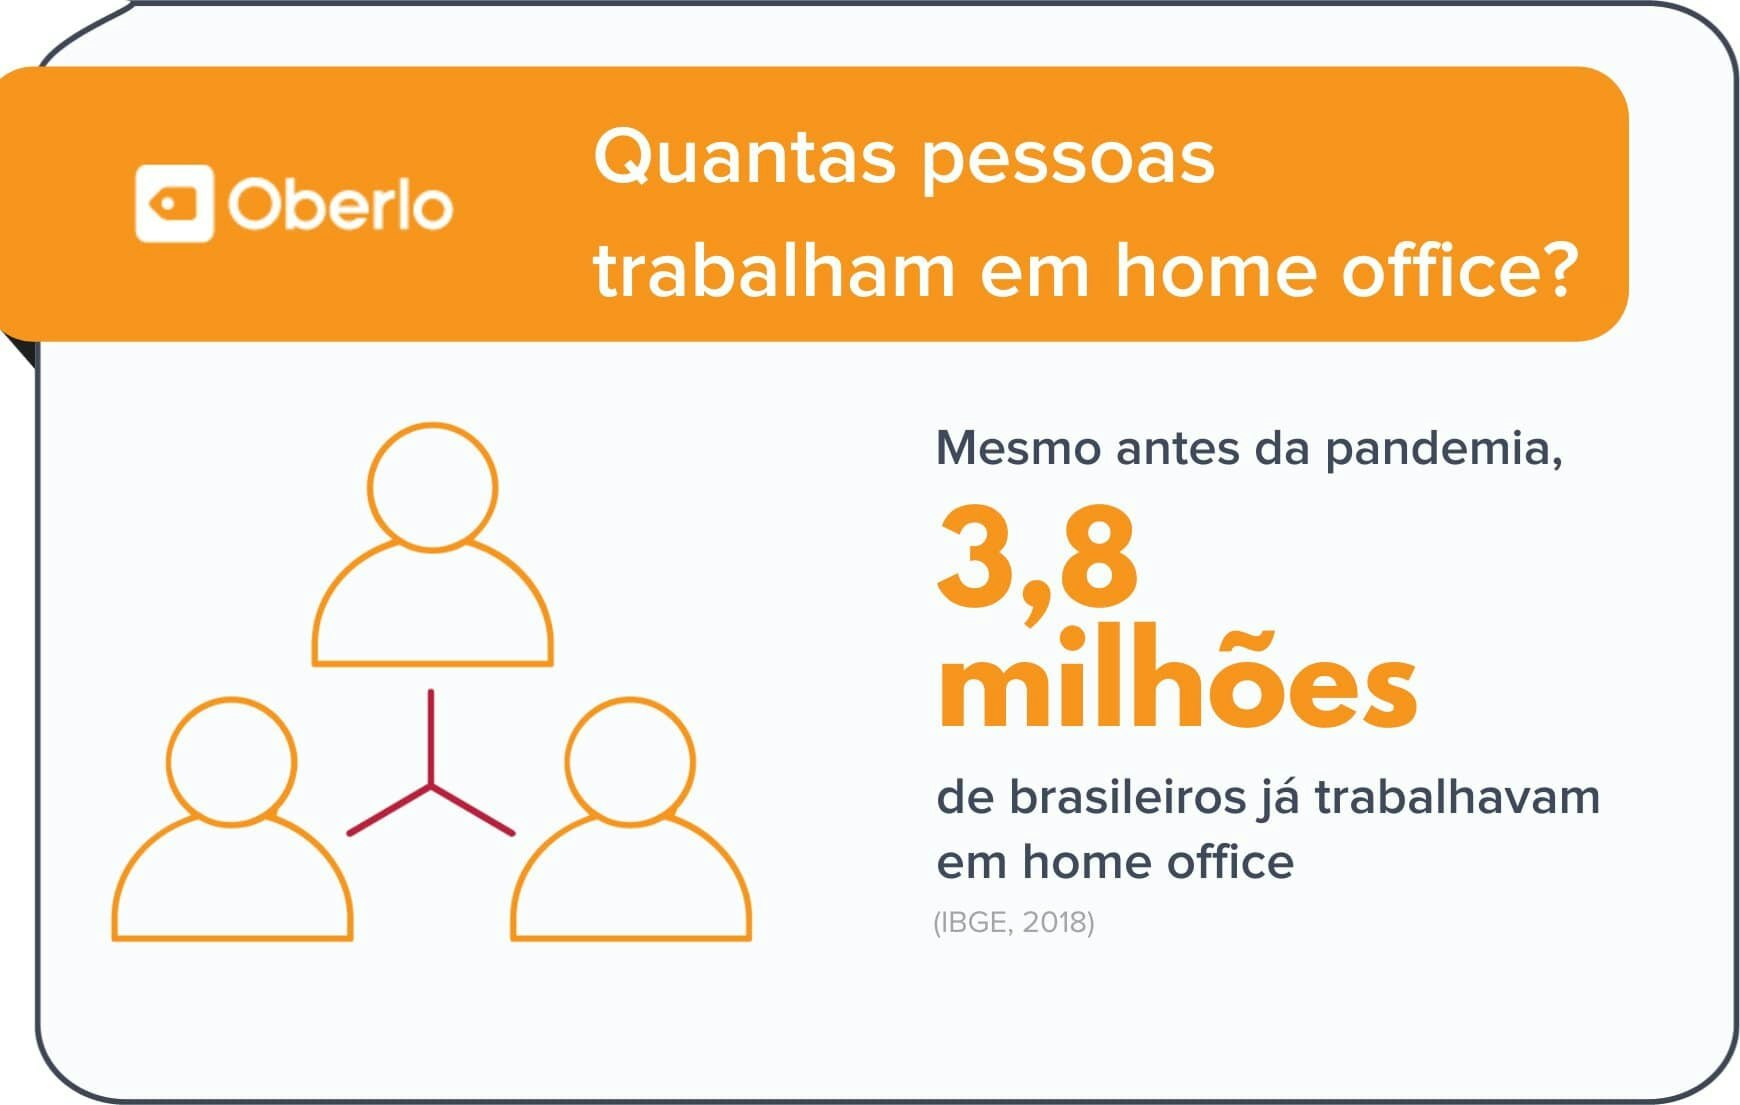 Brasileiros que trabalham em home office segundo estatísticas home office